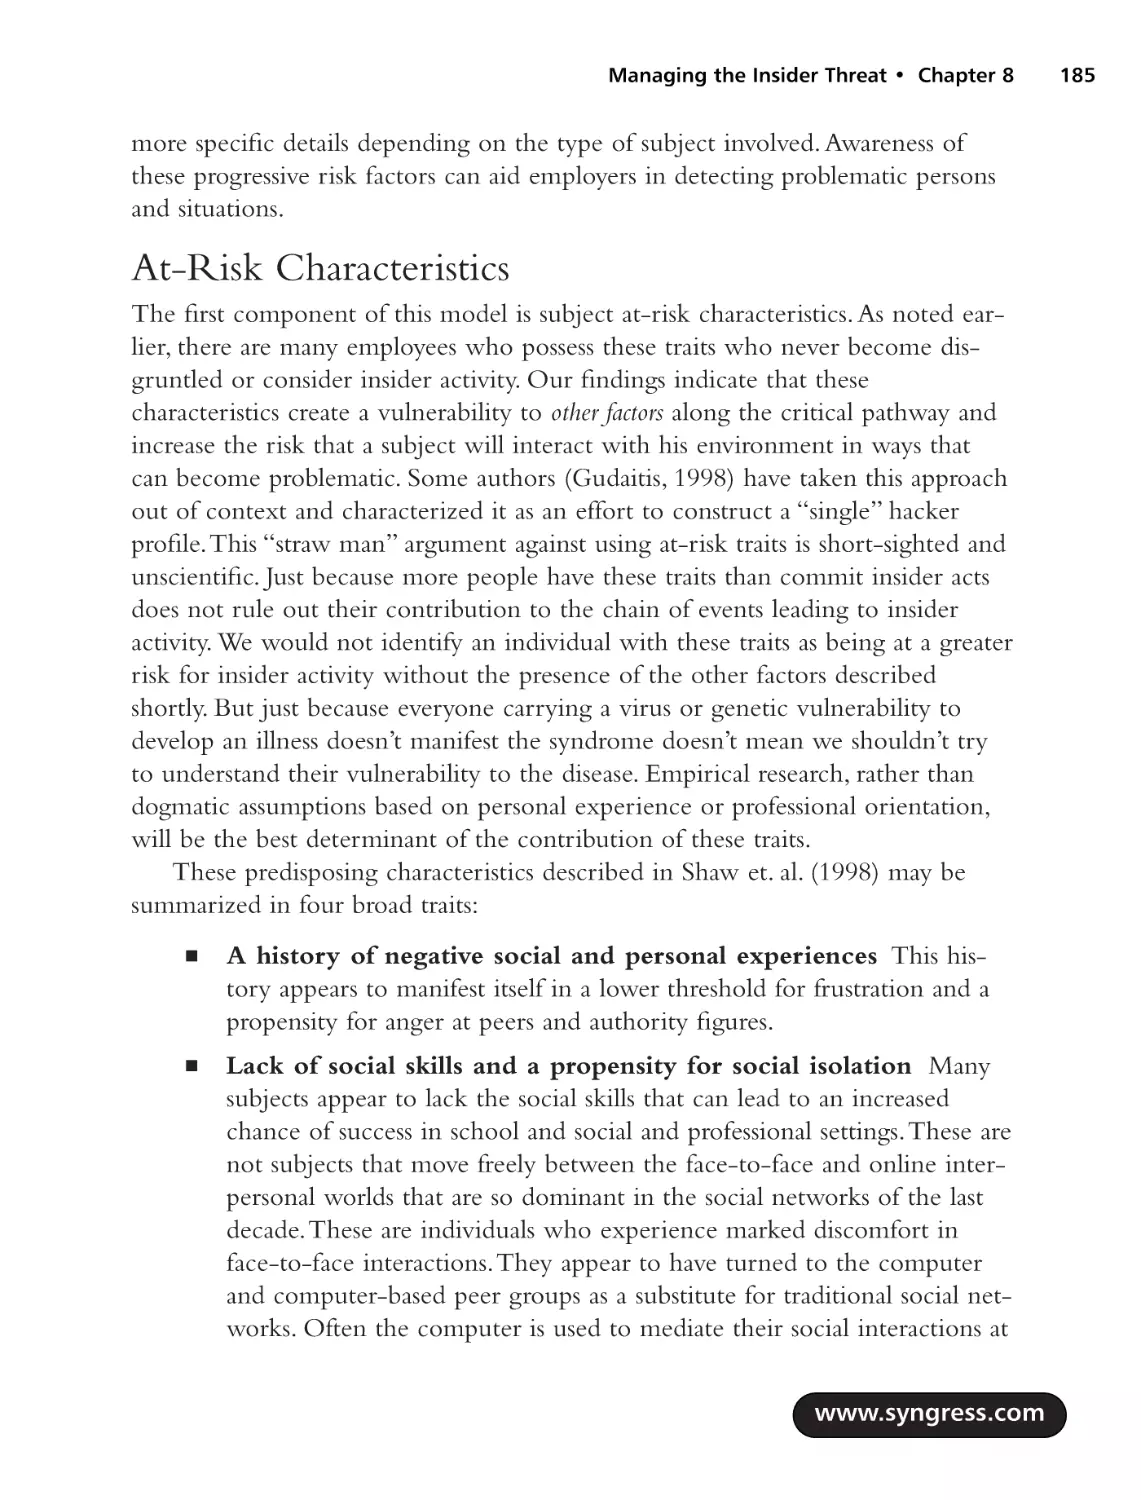 At-Risk Characteristics